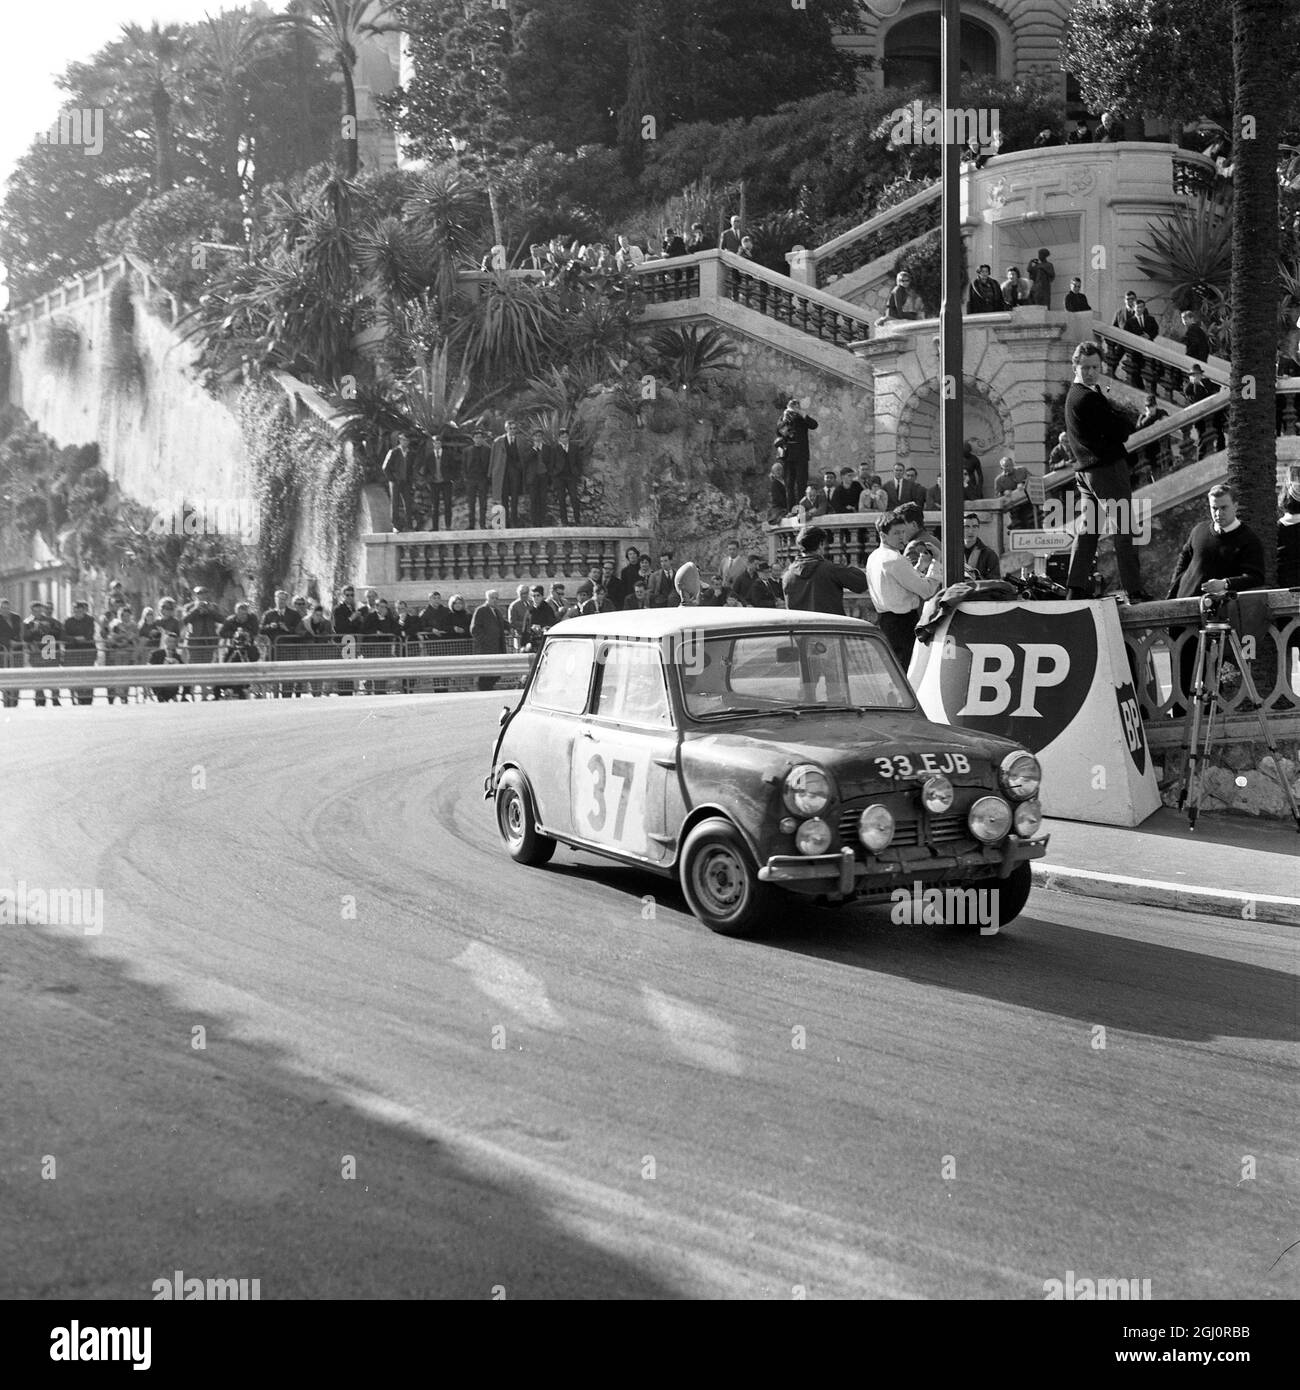 Intorno alle strade tortuose di Monaco va il BMC mini-cooper del driver britannico Paddy Hopkirk . Già protagonista delle prestazioni generali , è arrivato al primo posto anche nel test finale di velocità . 24 gennaio 1964 Foto Stock